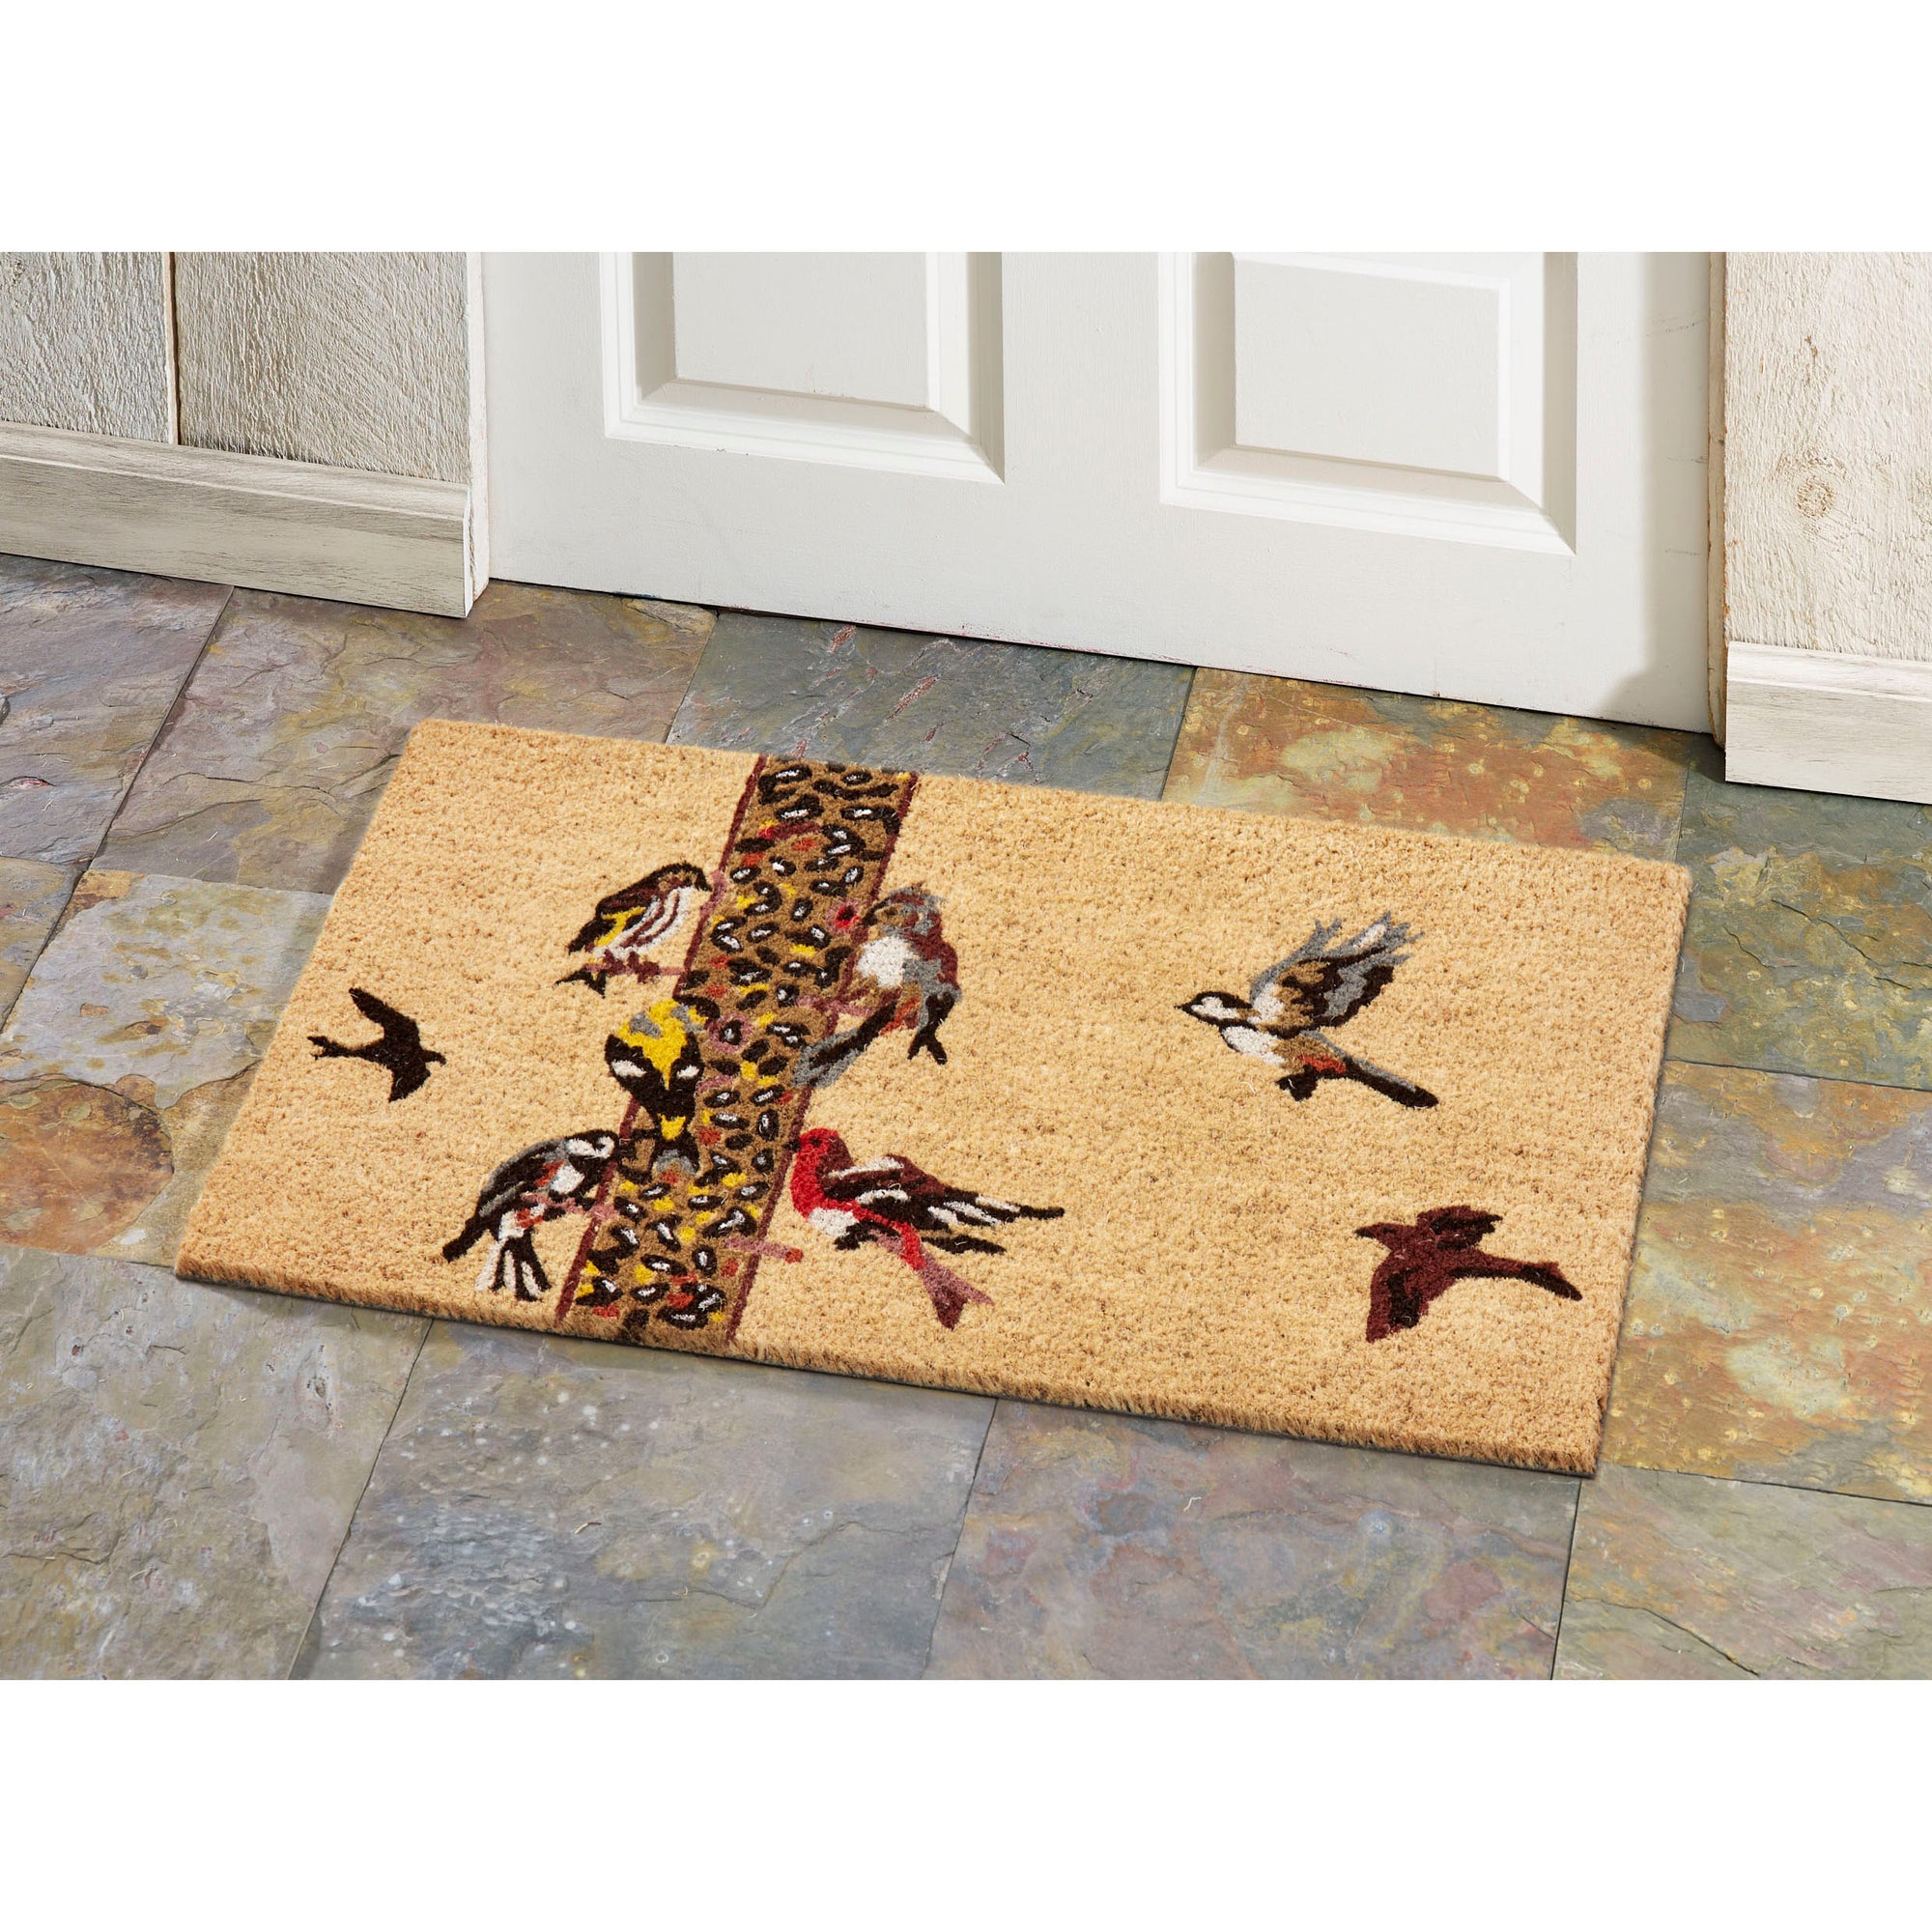 Backyard Birds Doormat